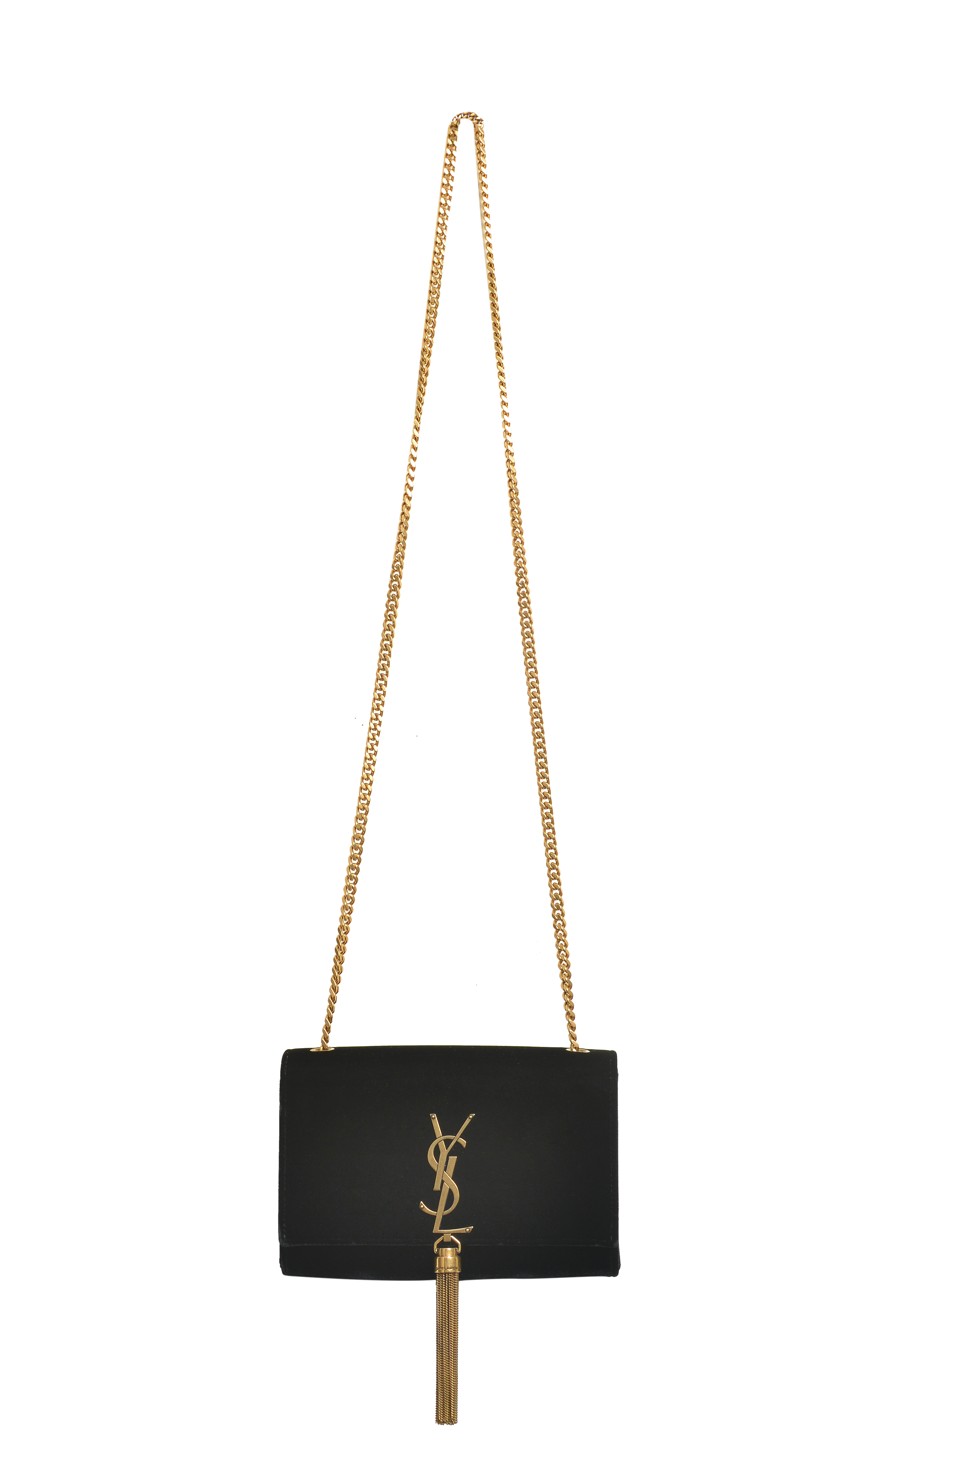 The Saint Laurent Kate chain bag in black velvet costs US$1,980.